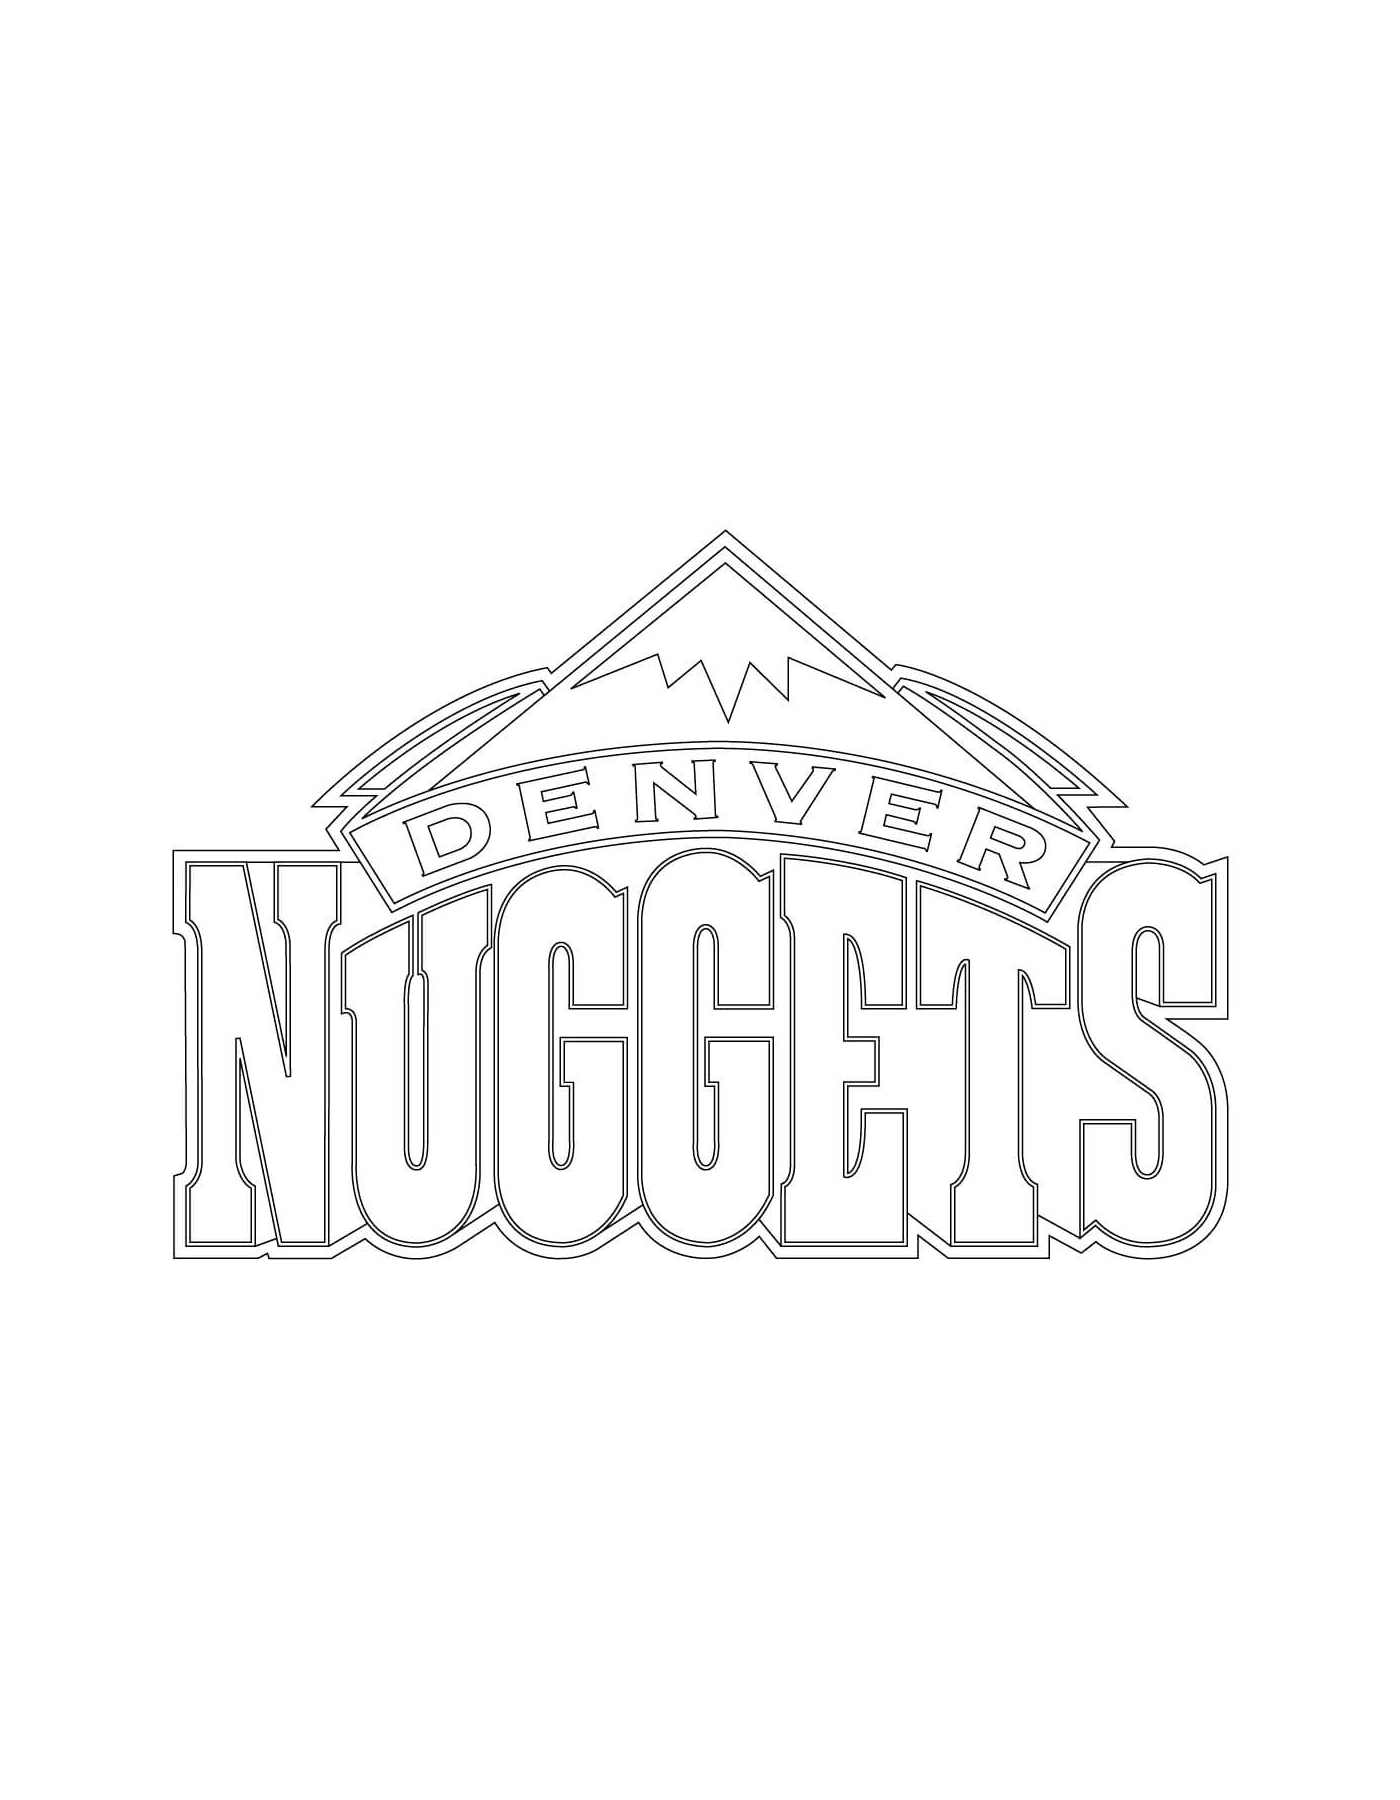  The Denver Nuggets logo, basketball team 